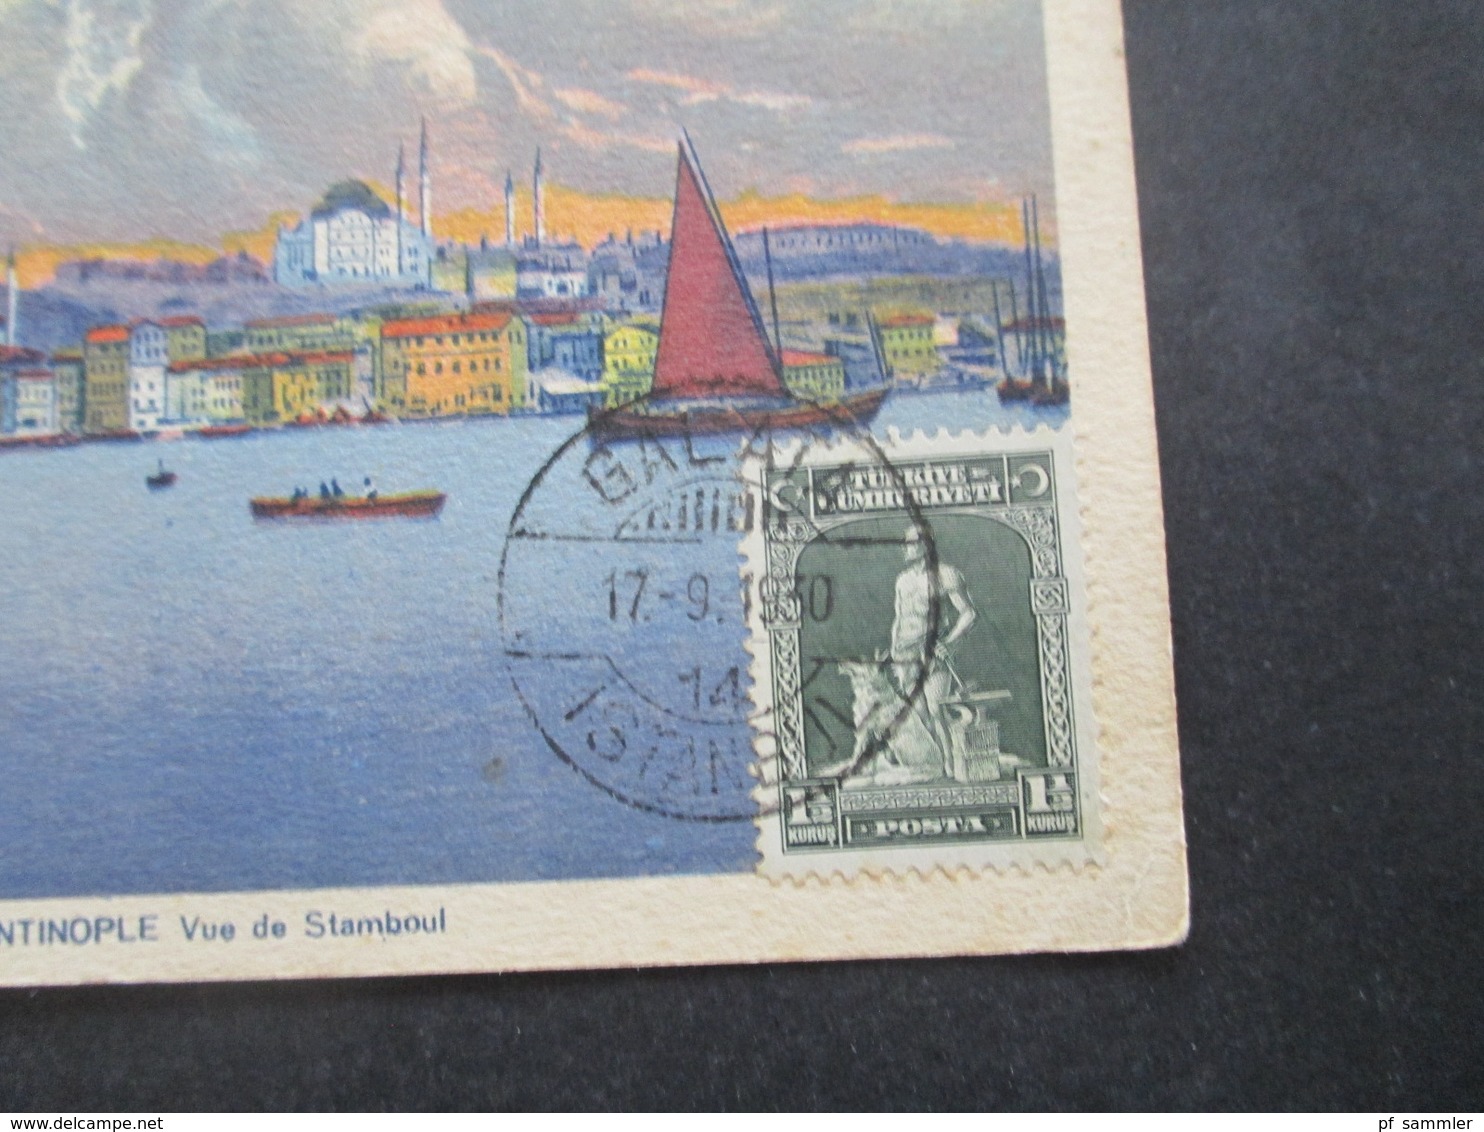 Türkei 1930 Bildseitig Frankierte AK Constantinople Vue De Stamboul Stempel Galata Nach Jugoslawien Gesendet - Storia Postale